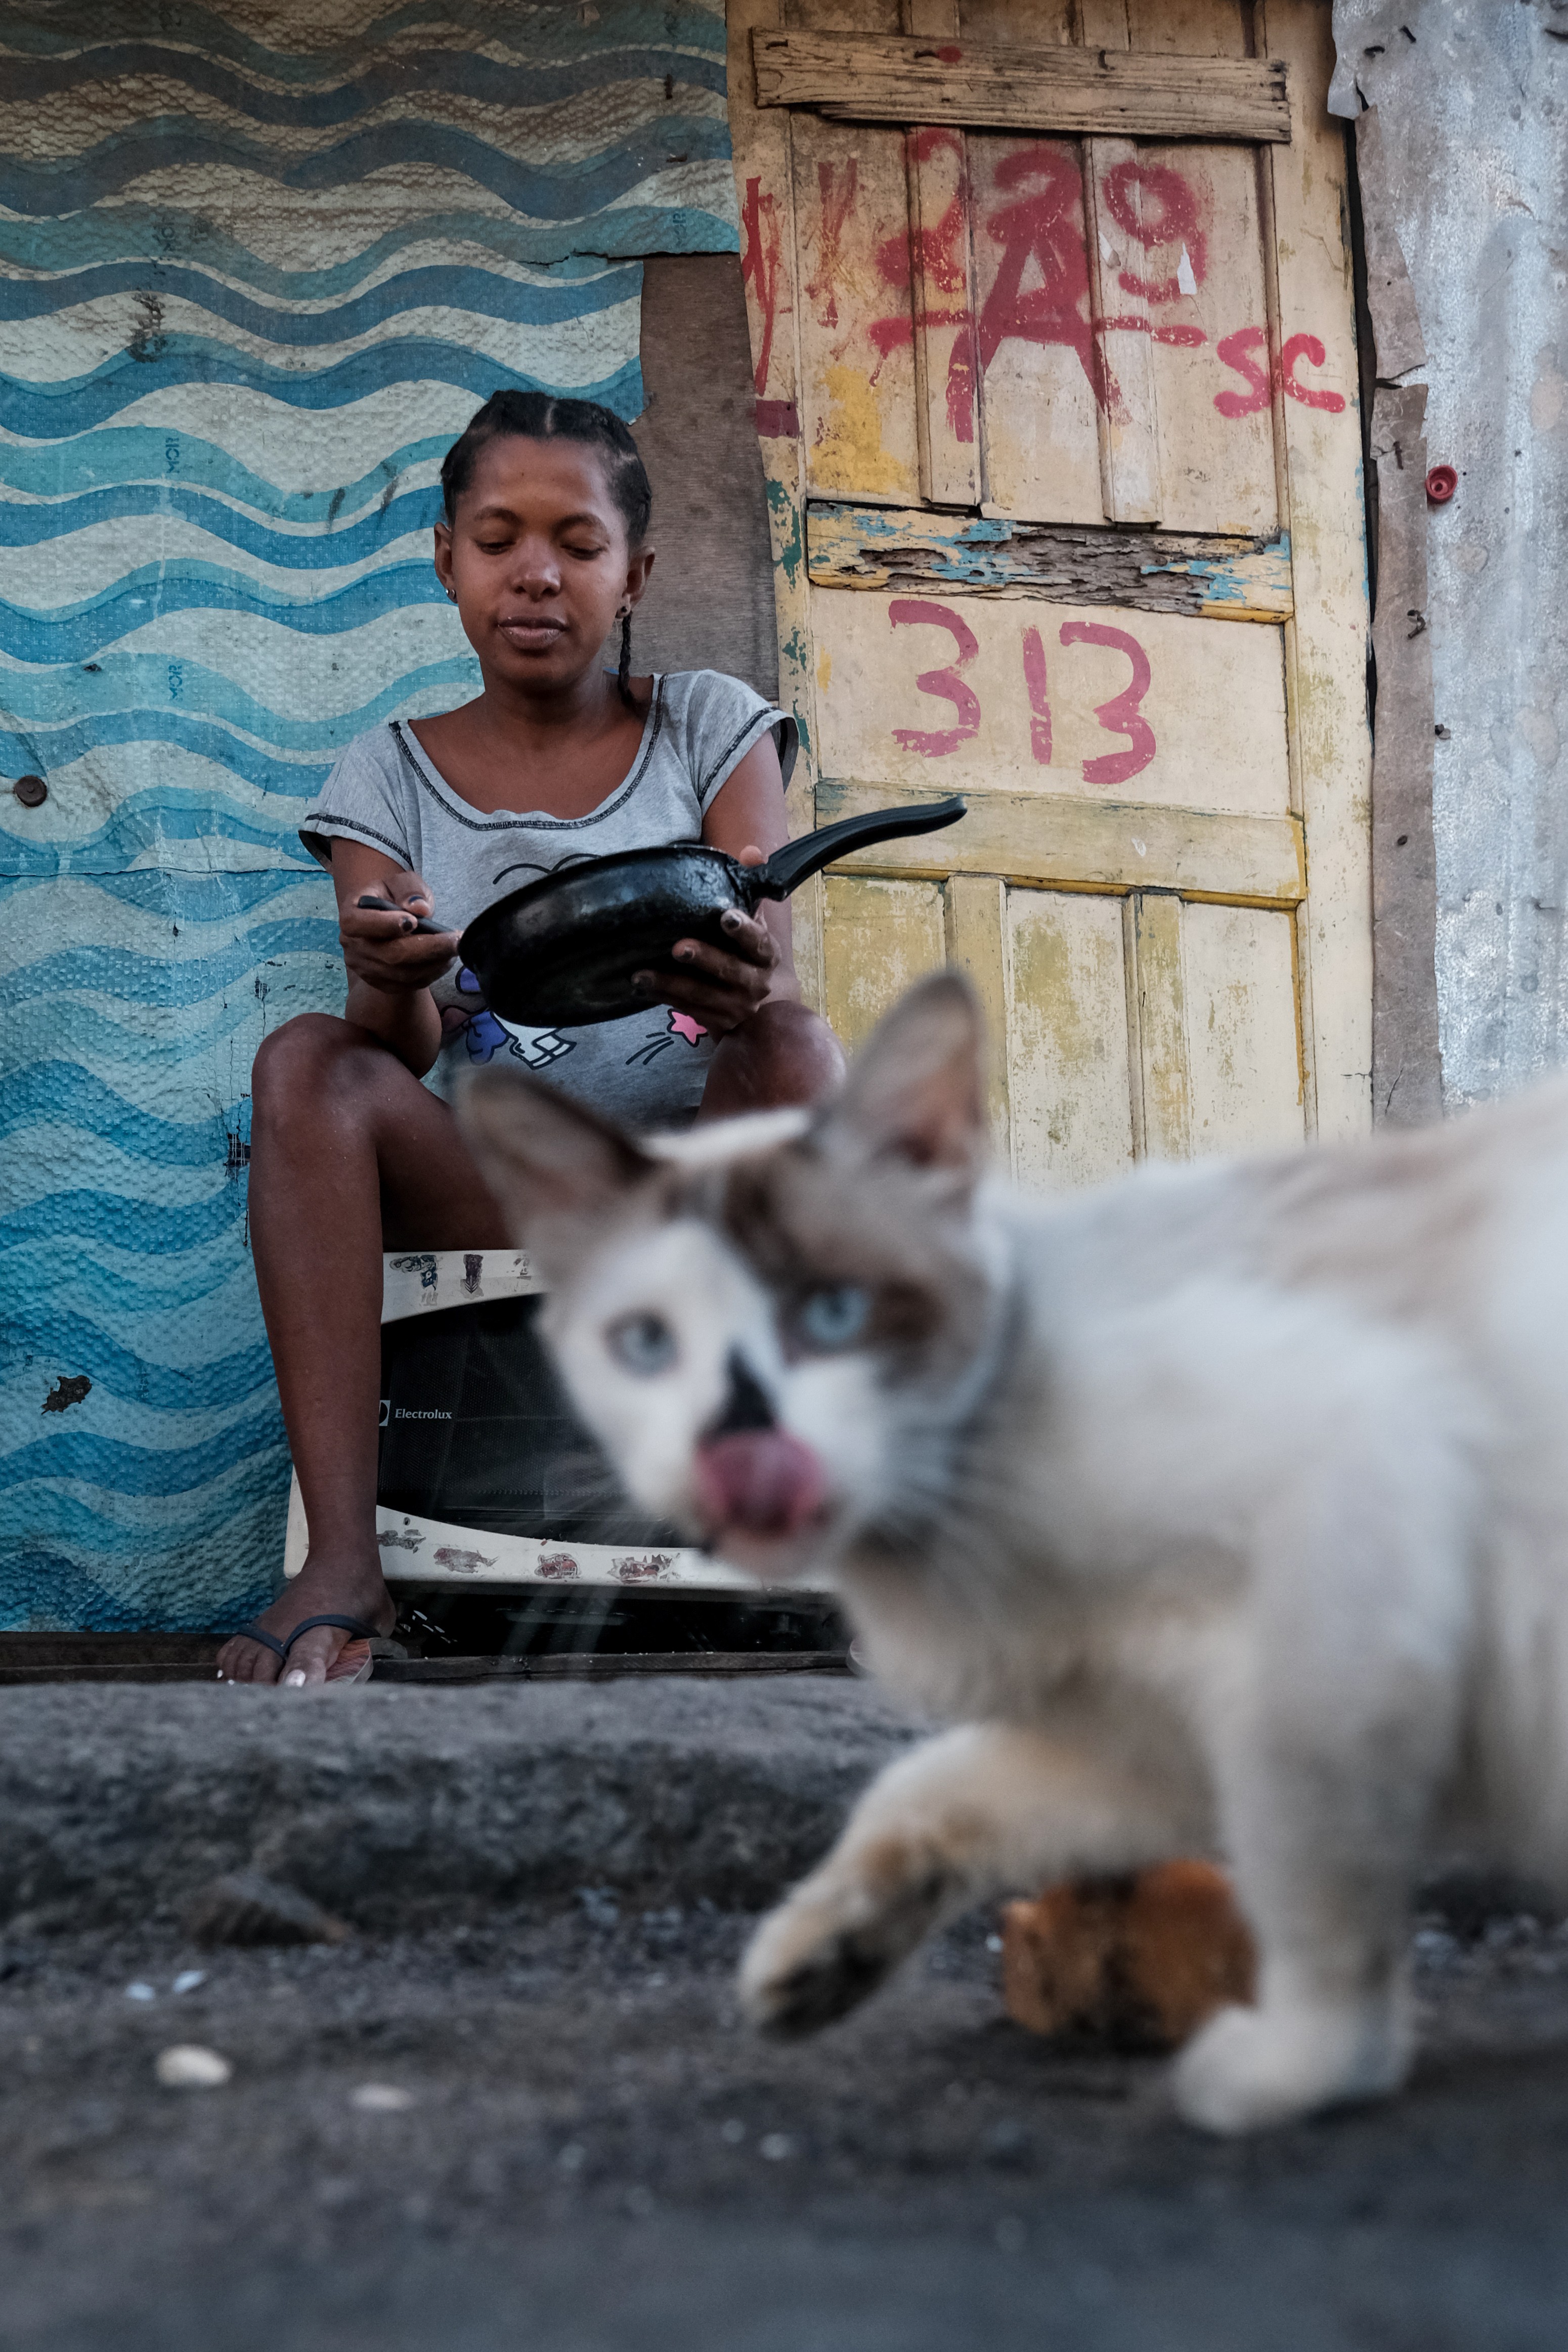 Laudeci Sales dos Santos, 32, grávida de sete meses, faz uma refeição de linguiça com farinha que ganhou do vizinho. Laudeci é mãe solo de uma criança de 8 anos (Foto: Felipe Nyland / Getty Images)